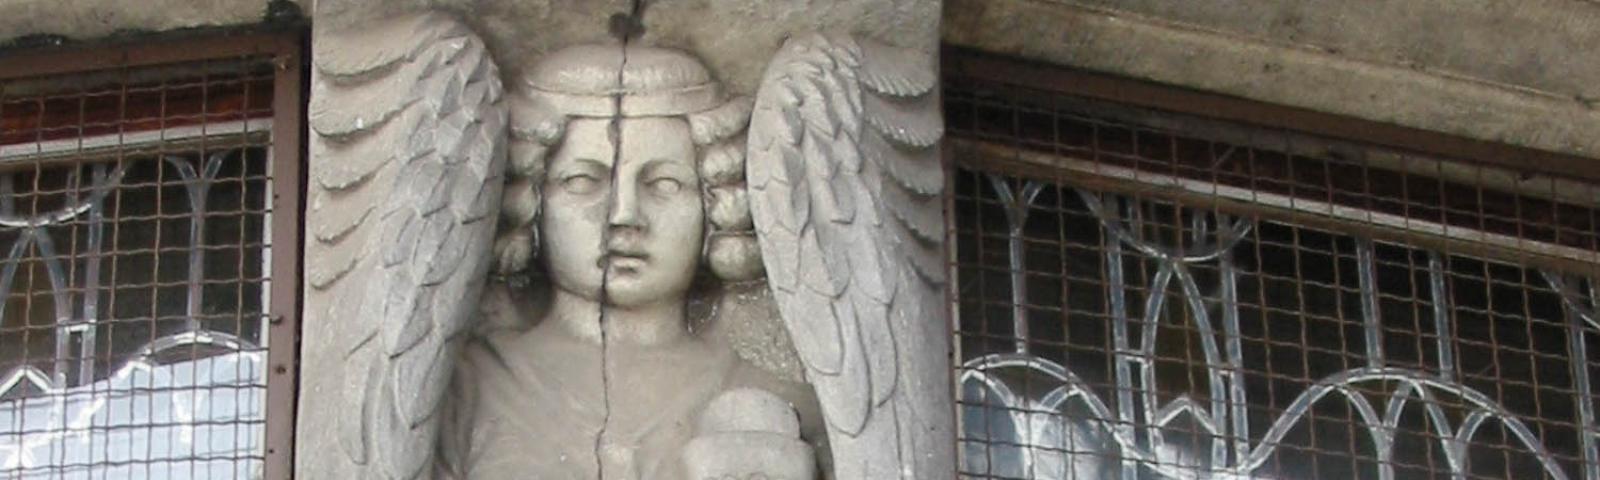 Engel aus Stein mit Kelch in der Hand